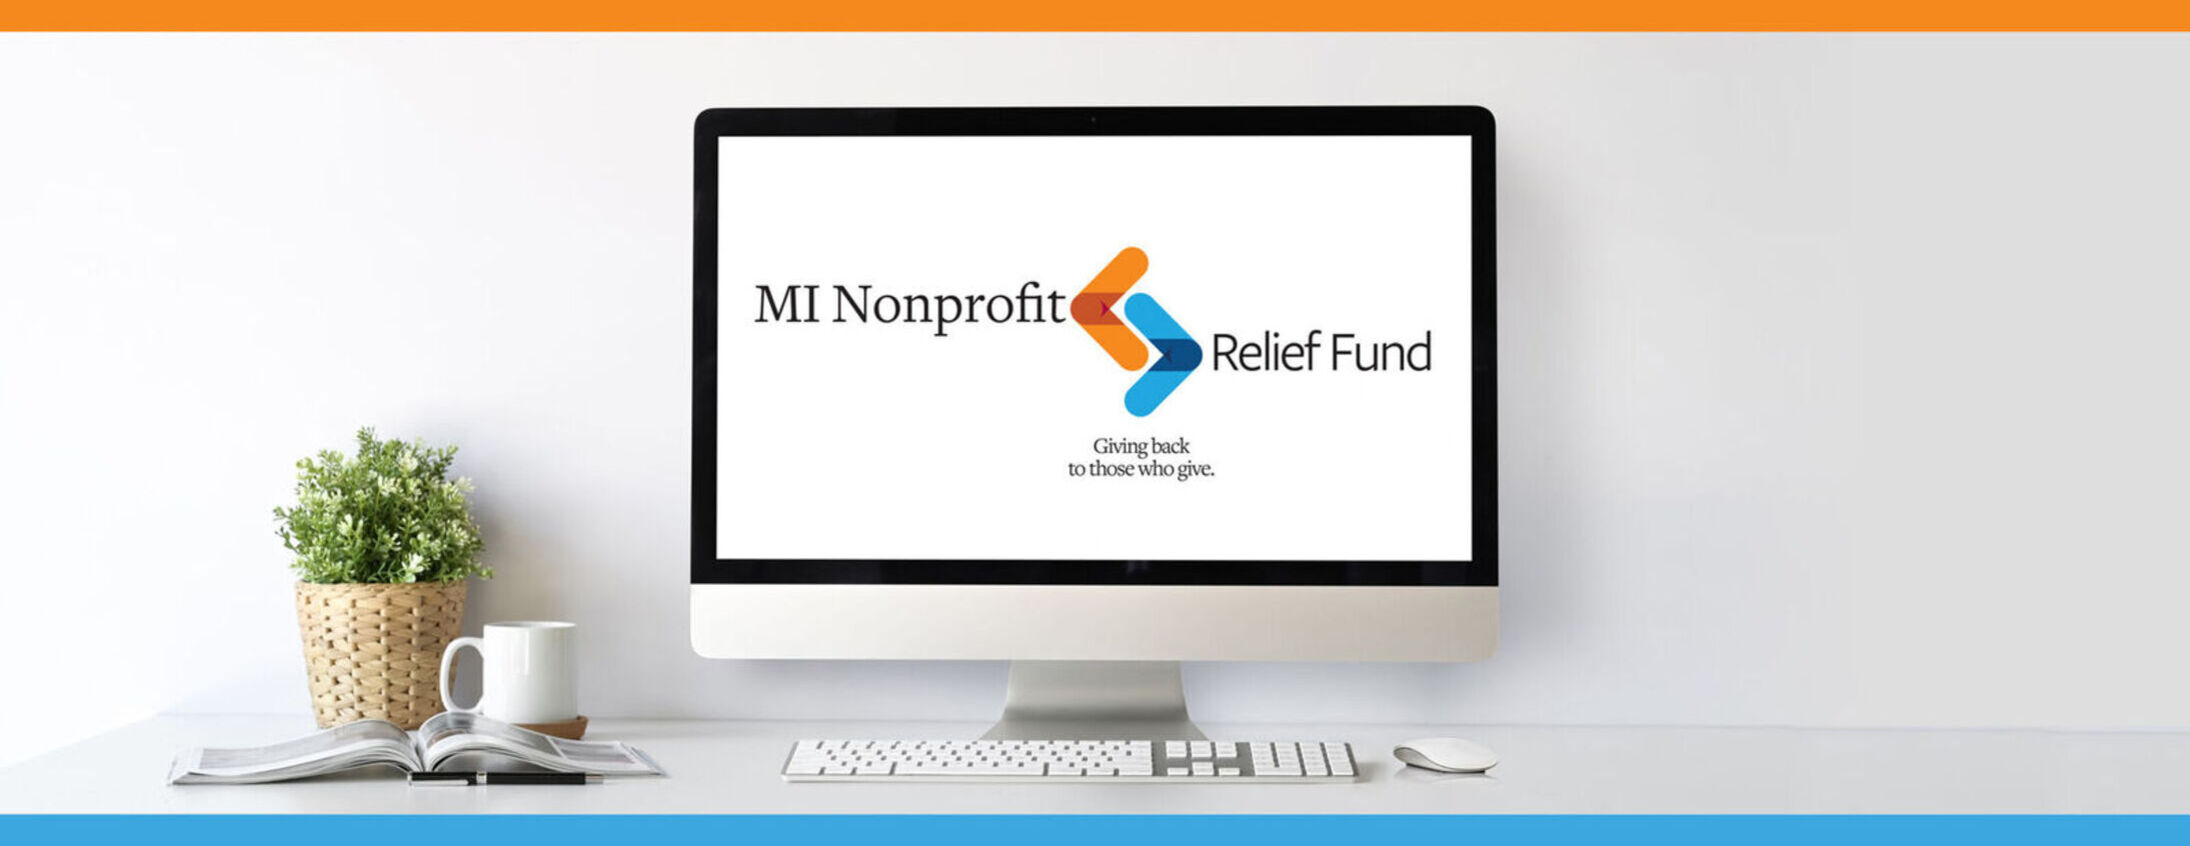 MI Nonprofit Relief Fund Logo on Computer